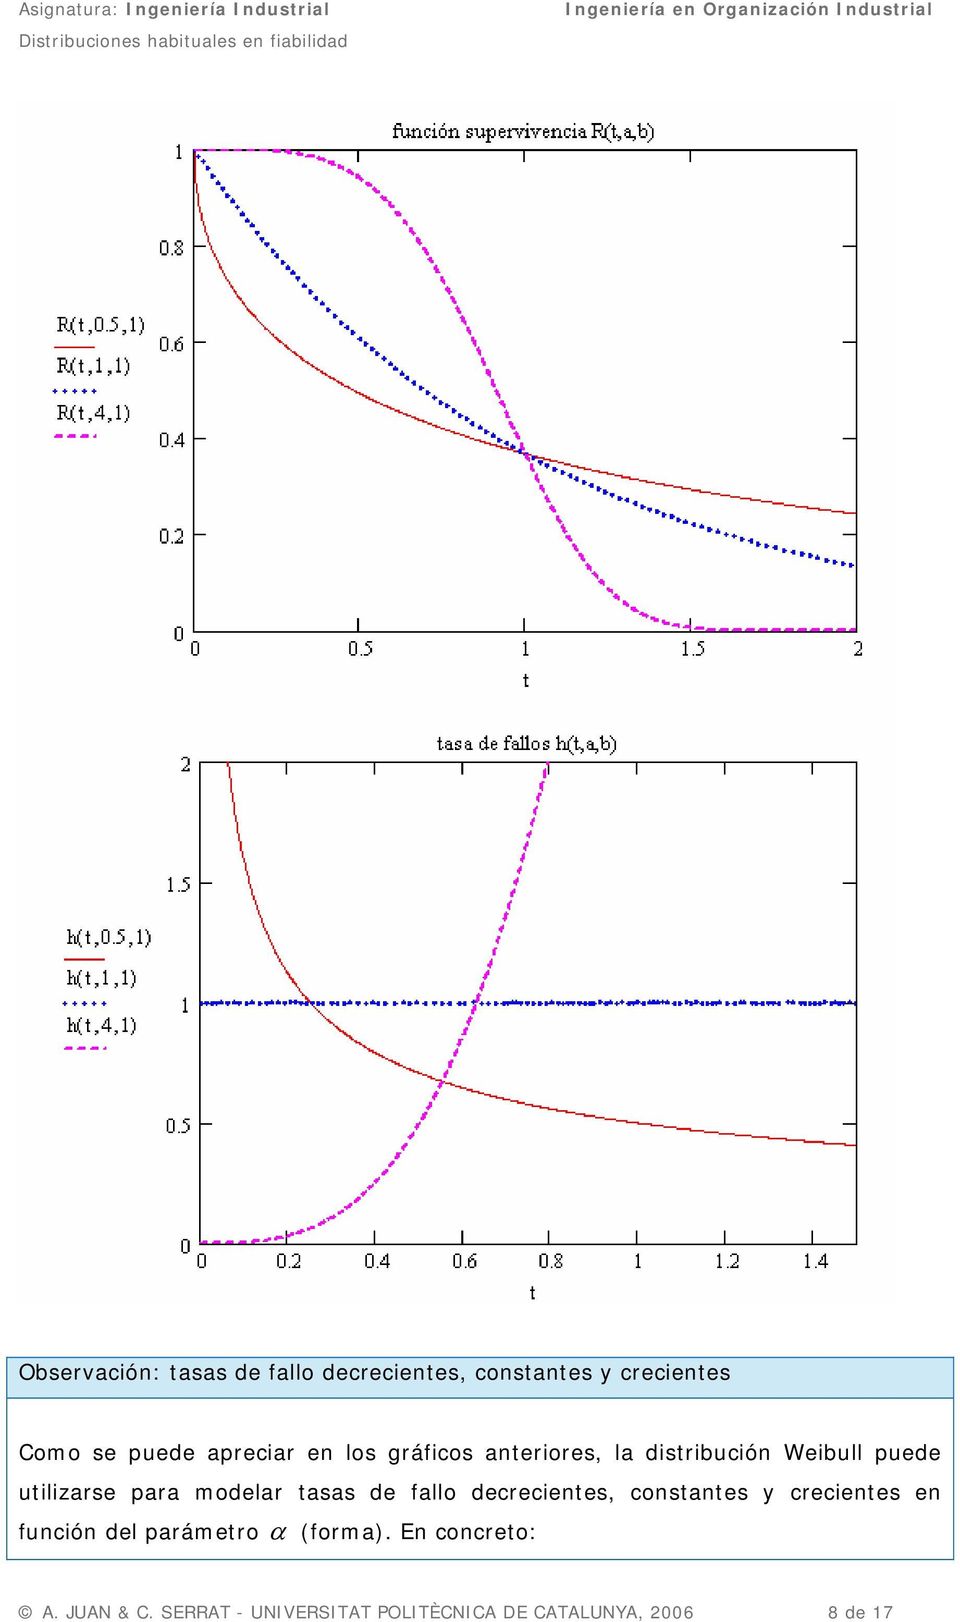 modelar tasas de fallo decrecientes, constantes y crecientes en función del parámetro